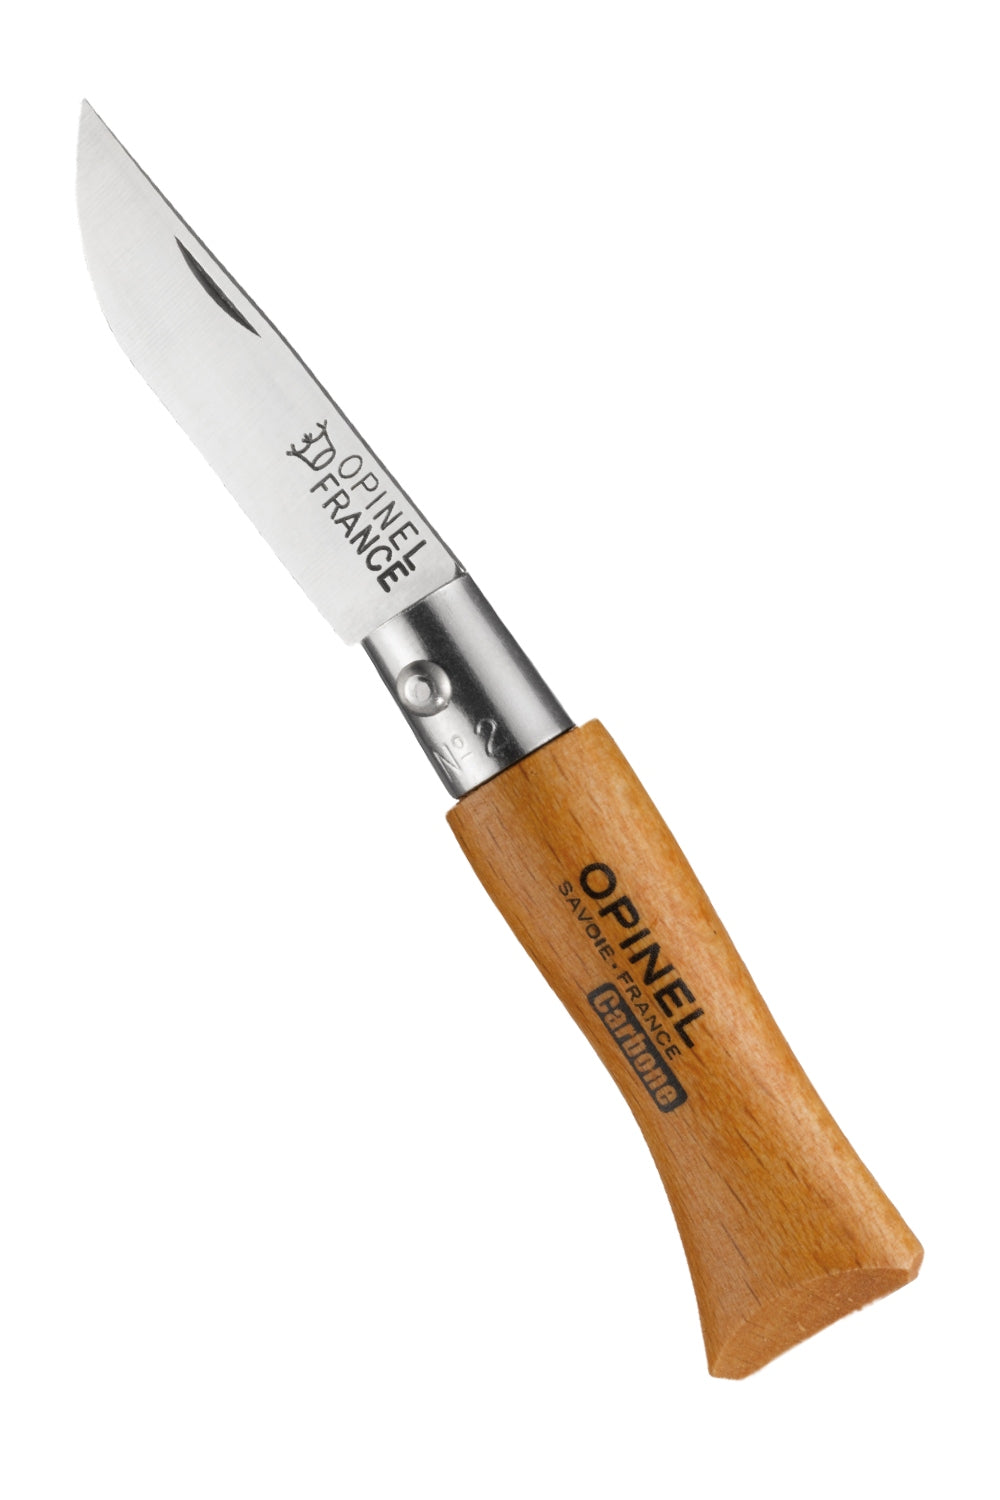 Opinel Classic Originals Non Locking Knife 3.5cm in Carbon